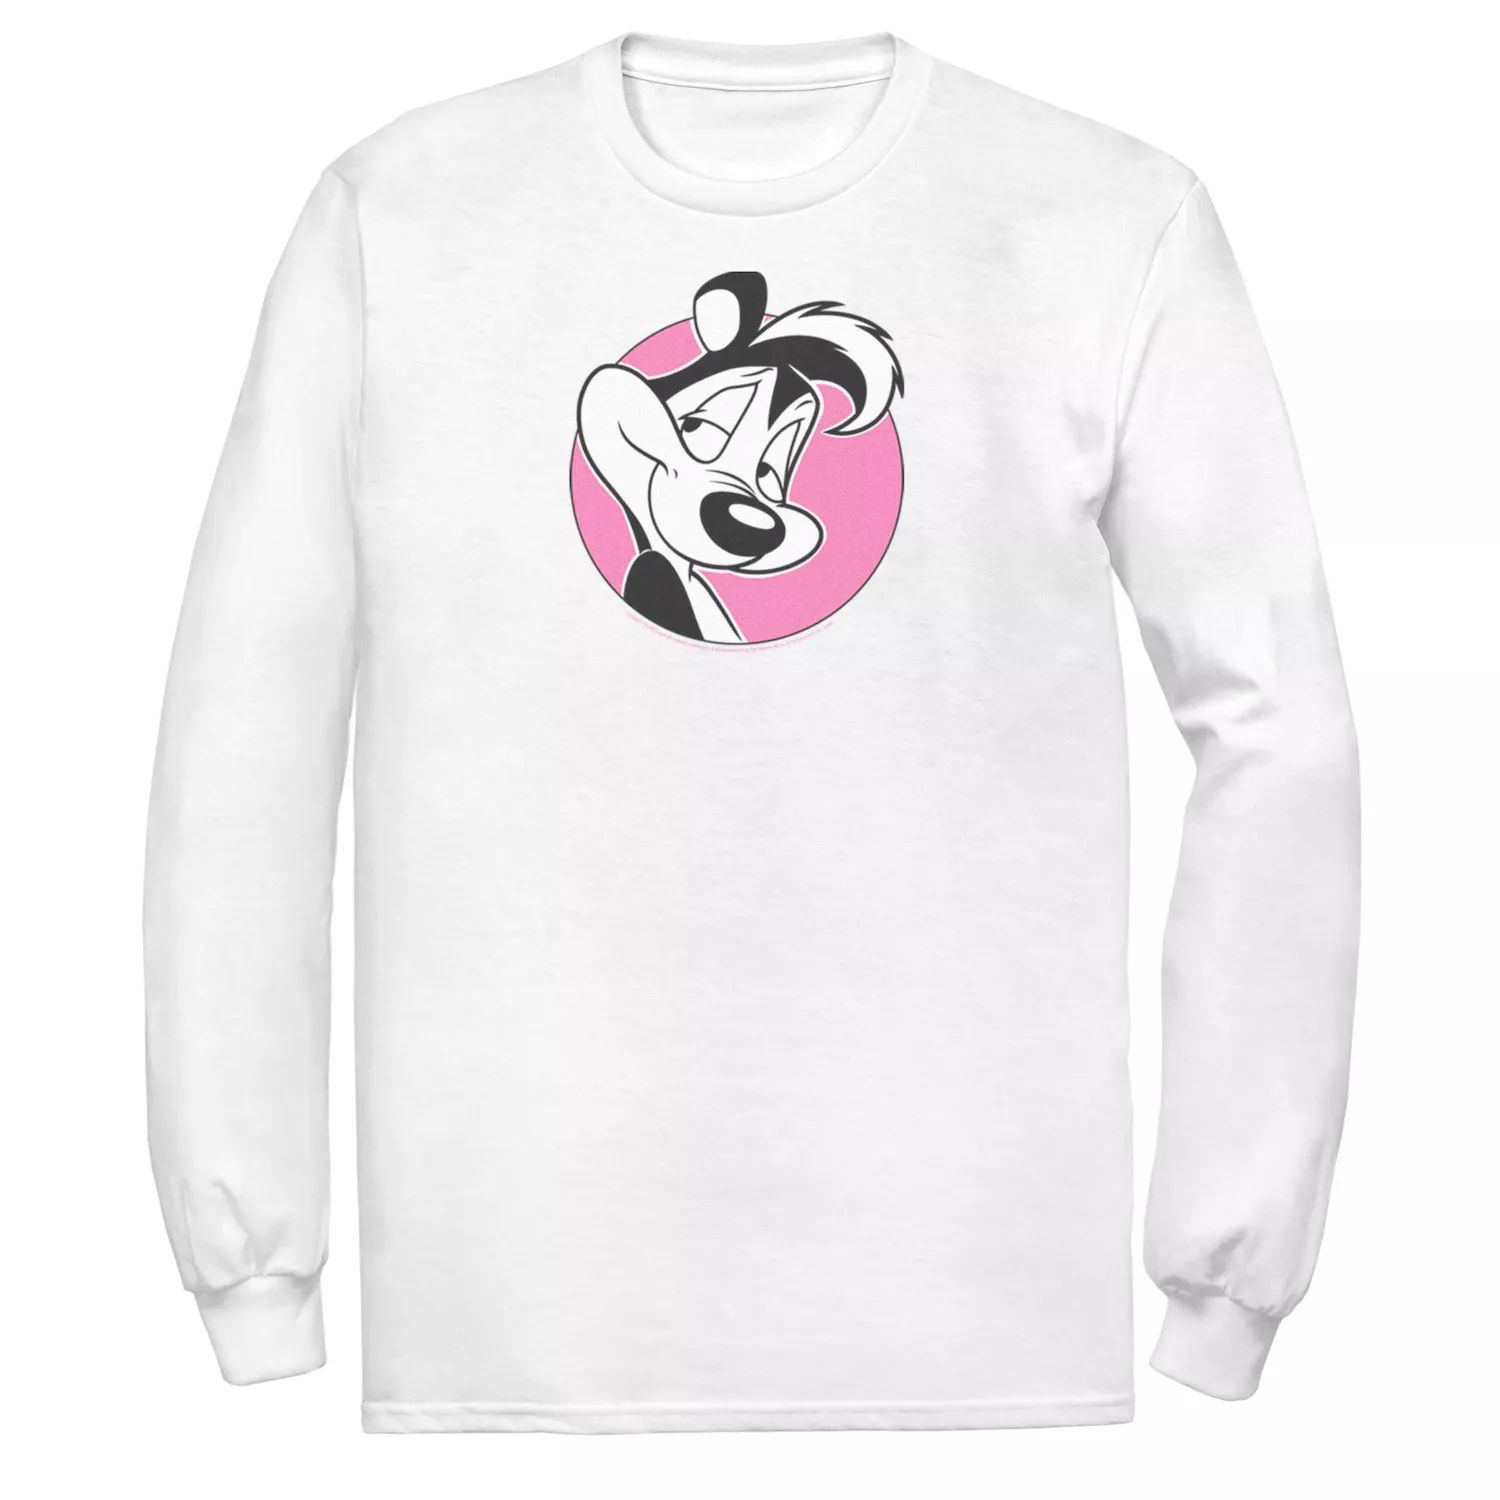 Мужская розовая футболка с портретом в форме круга Looney Tunes Pepe Le Pew Licensed Character